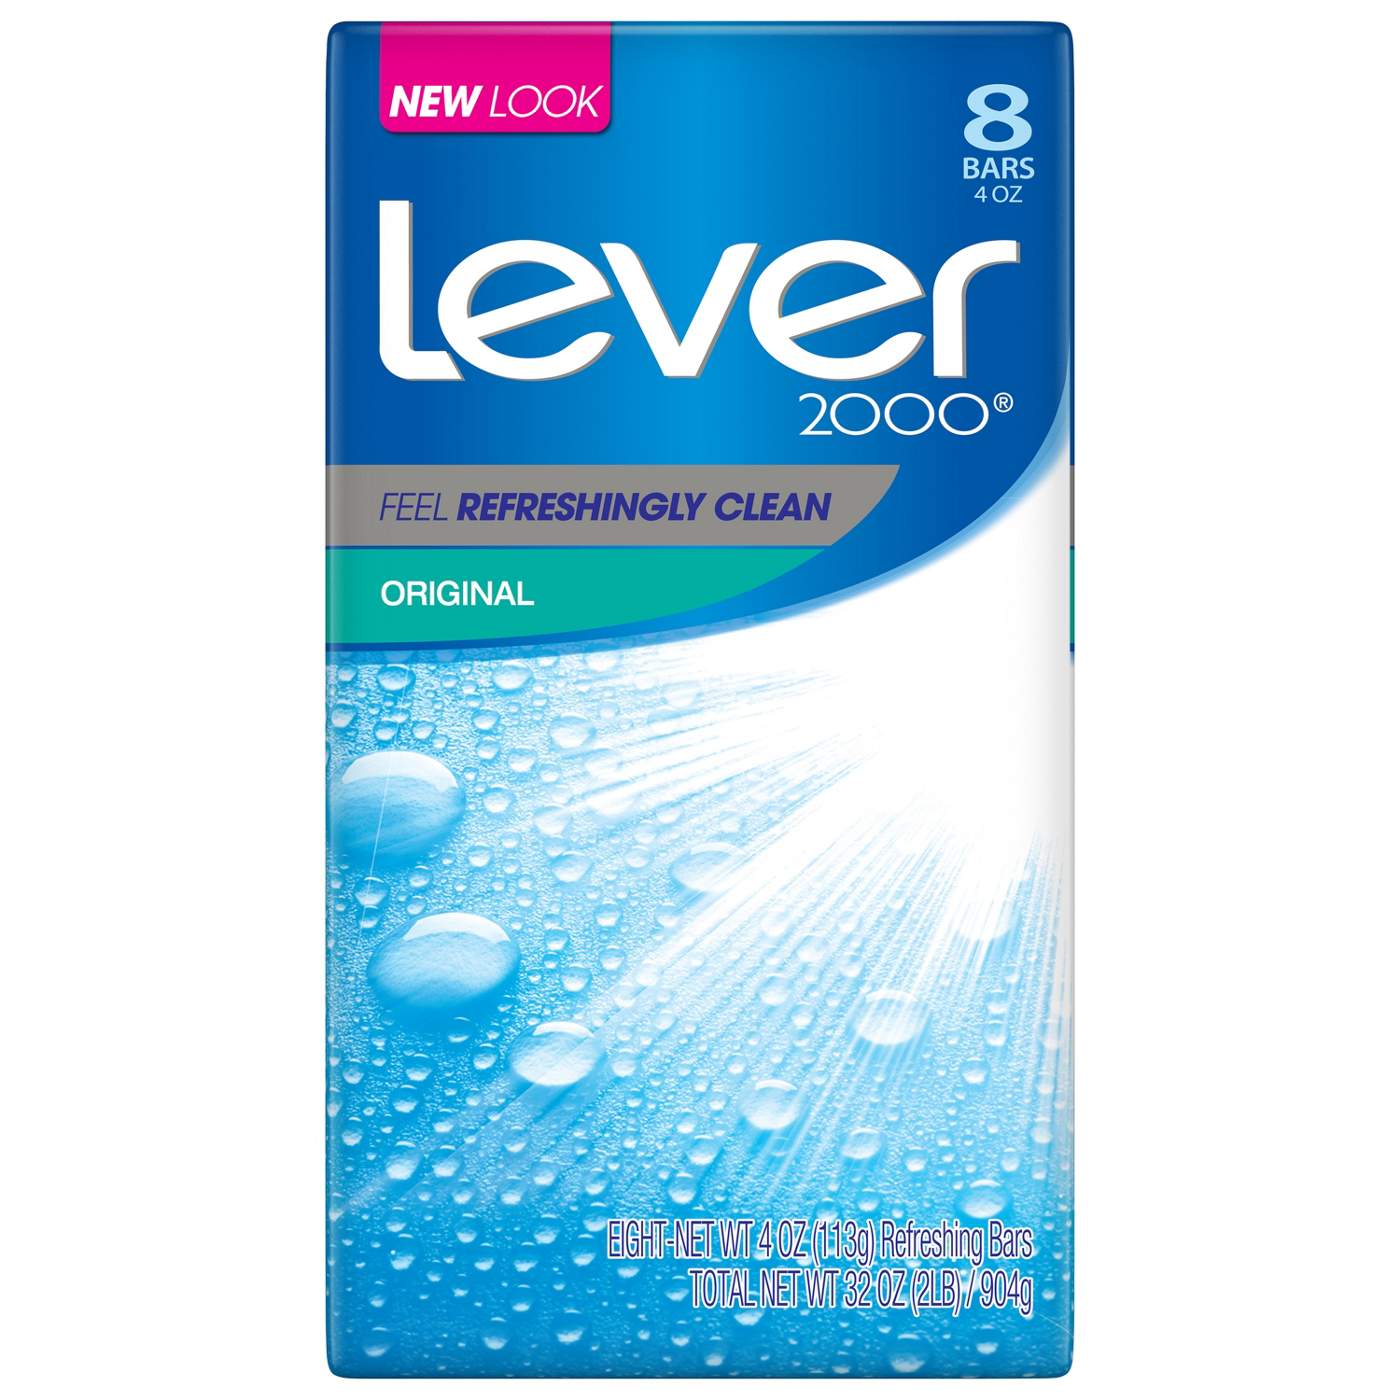 Lever 2000 Original Bar Soap; image 2 of 2